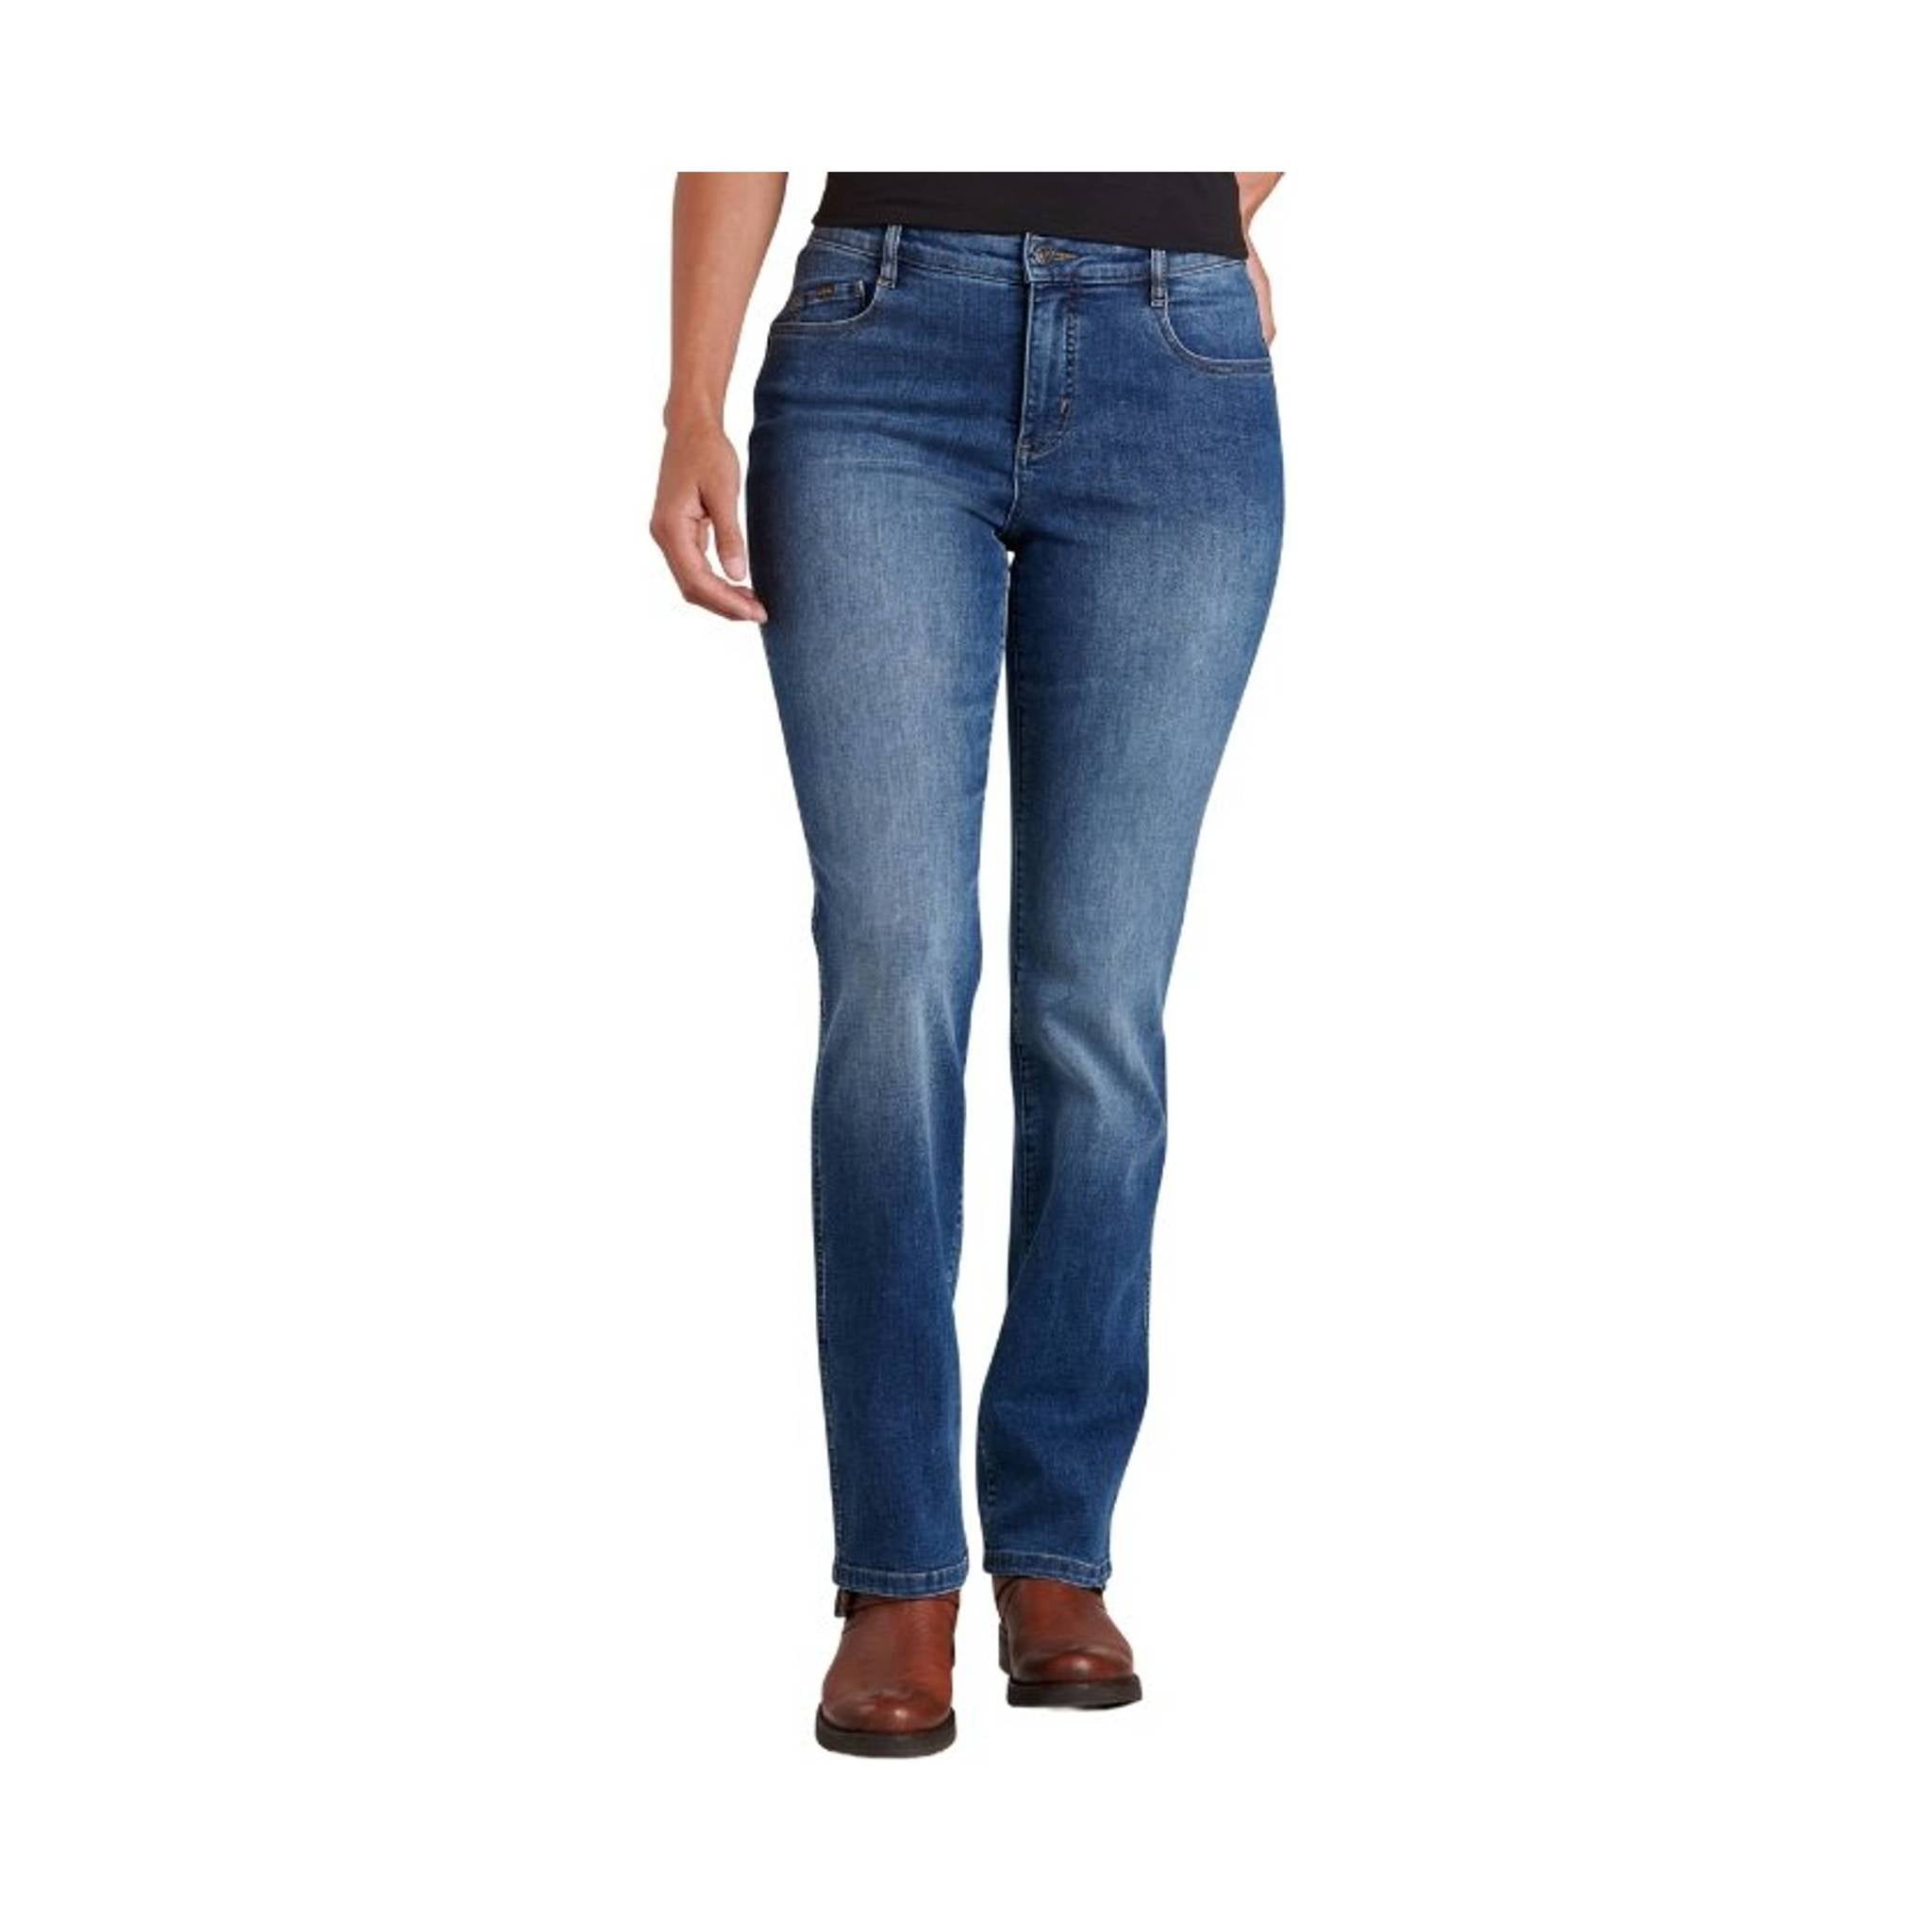 Kuhl Women's 9 Inch Kontour Flex Denim Jeans - Vintage Blue